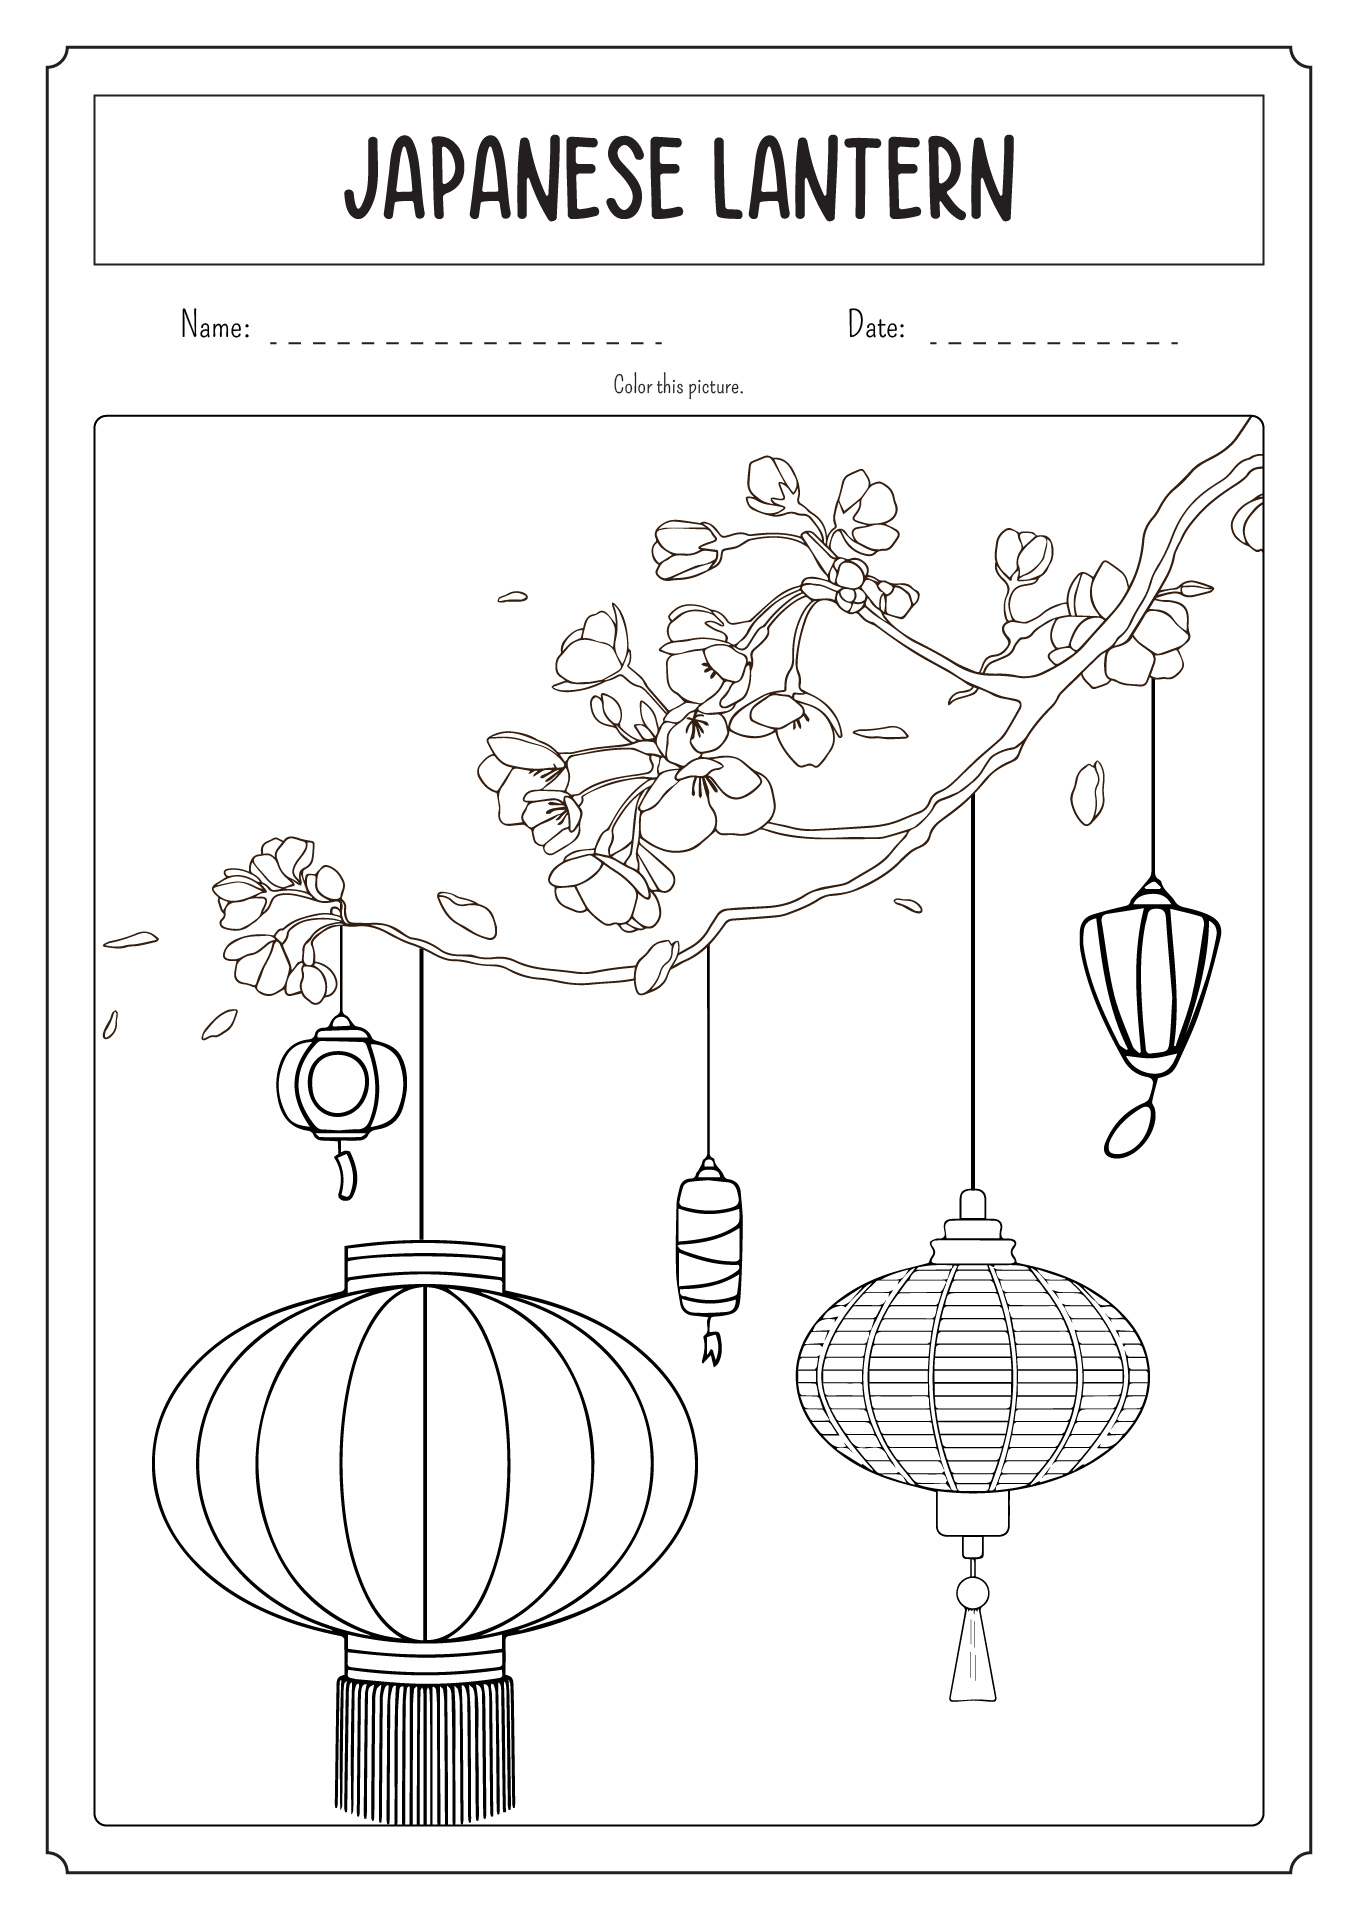 Japanese Lantern Coloring Page Image